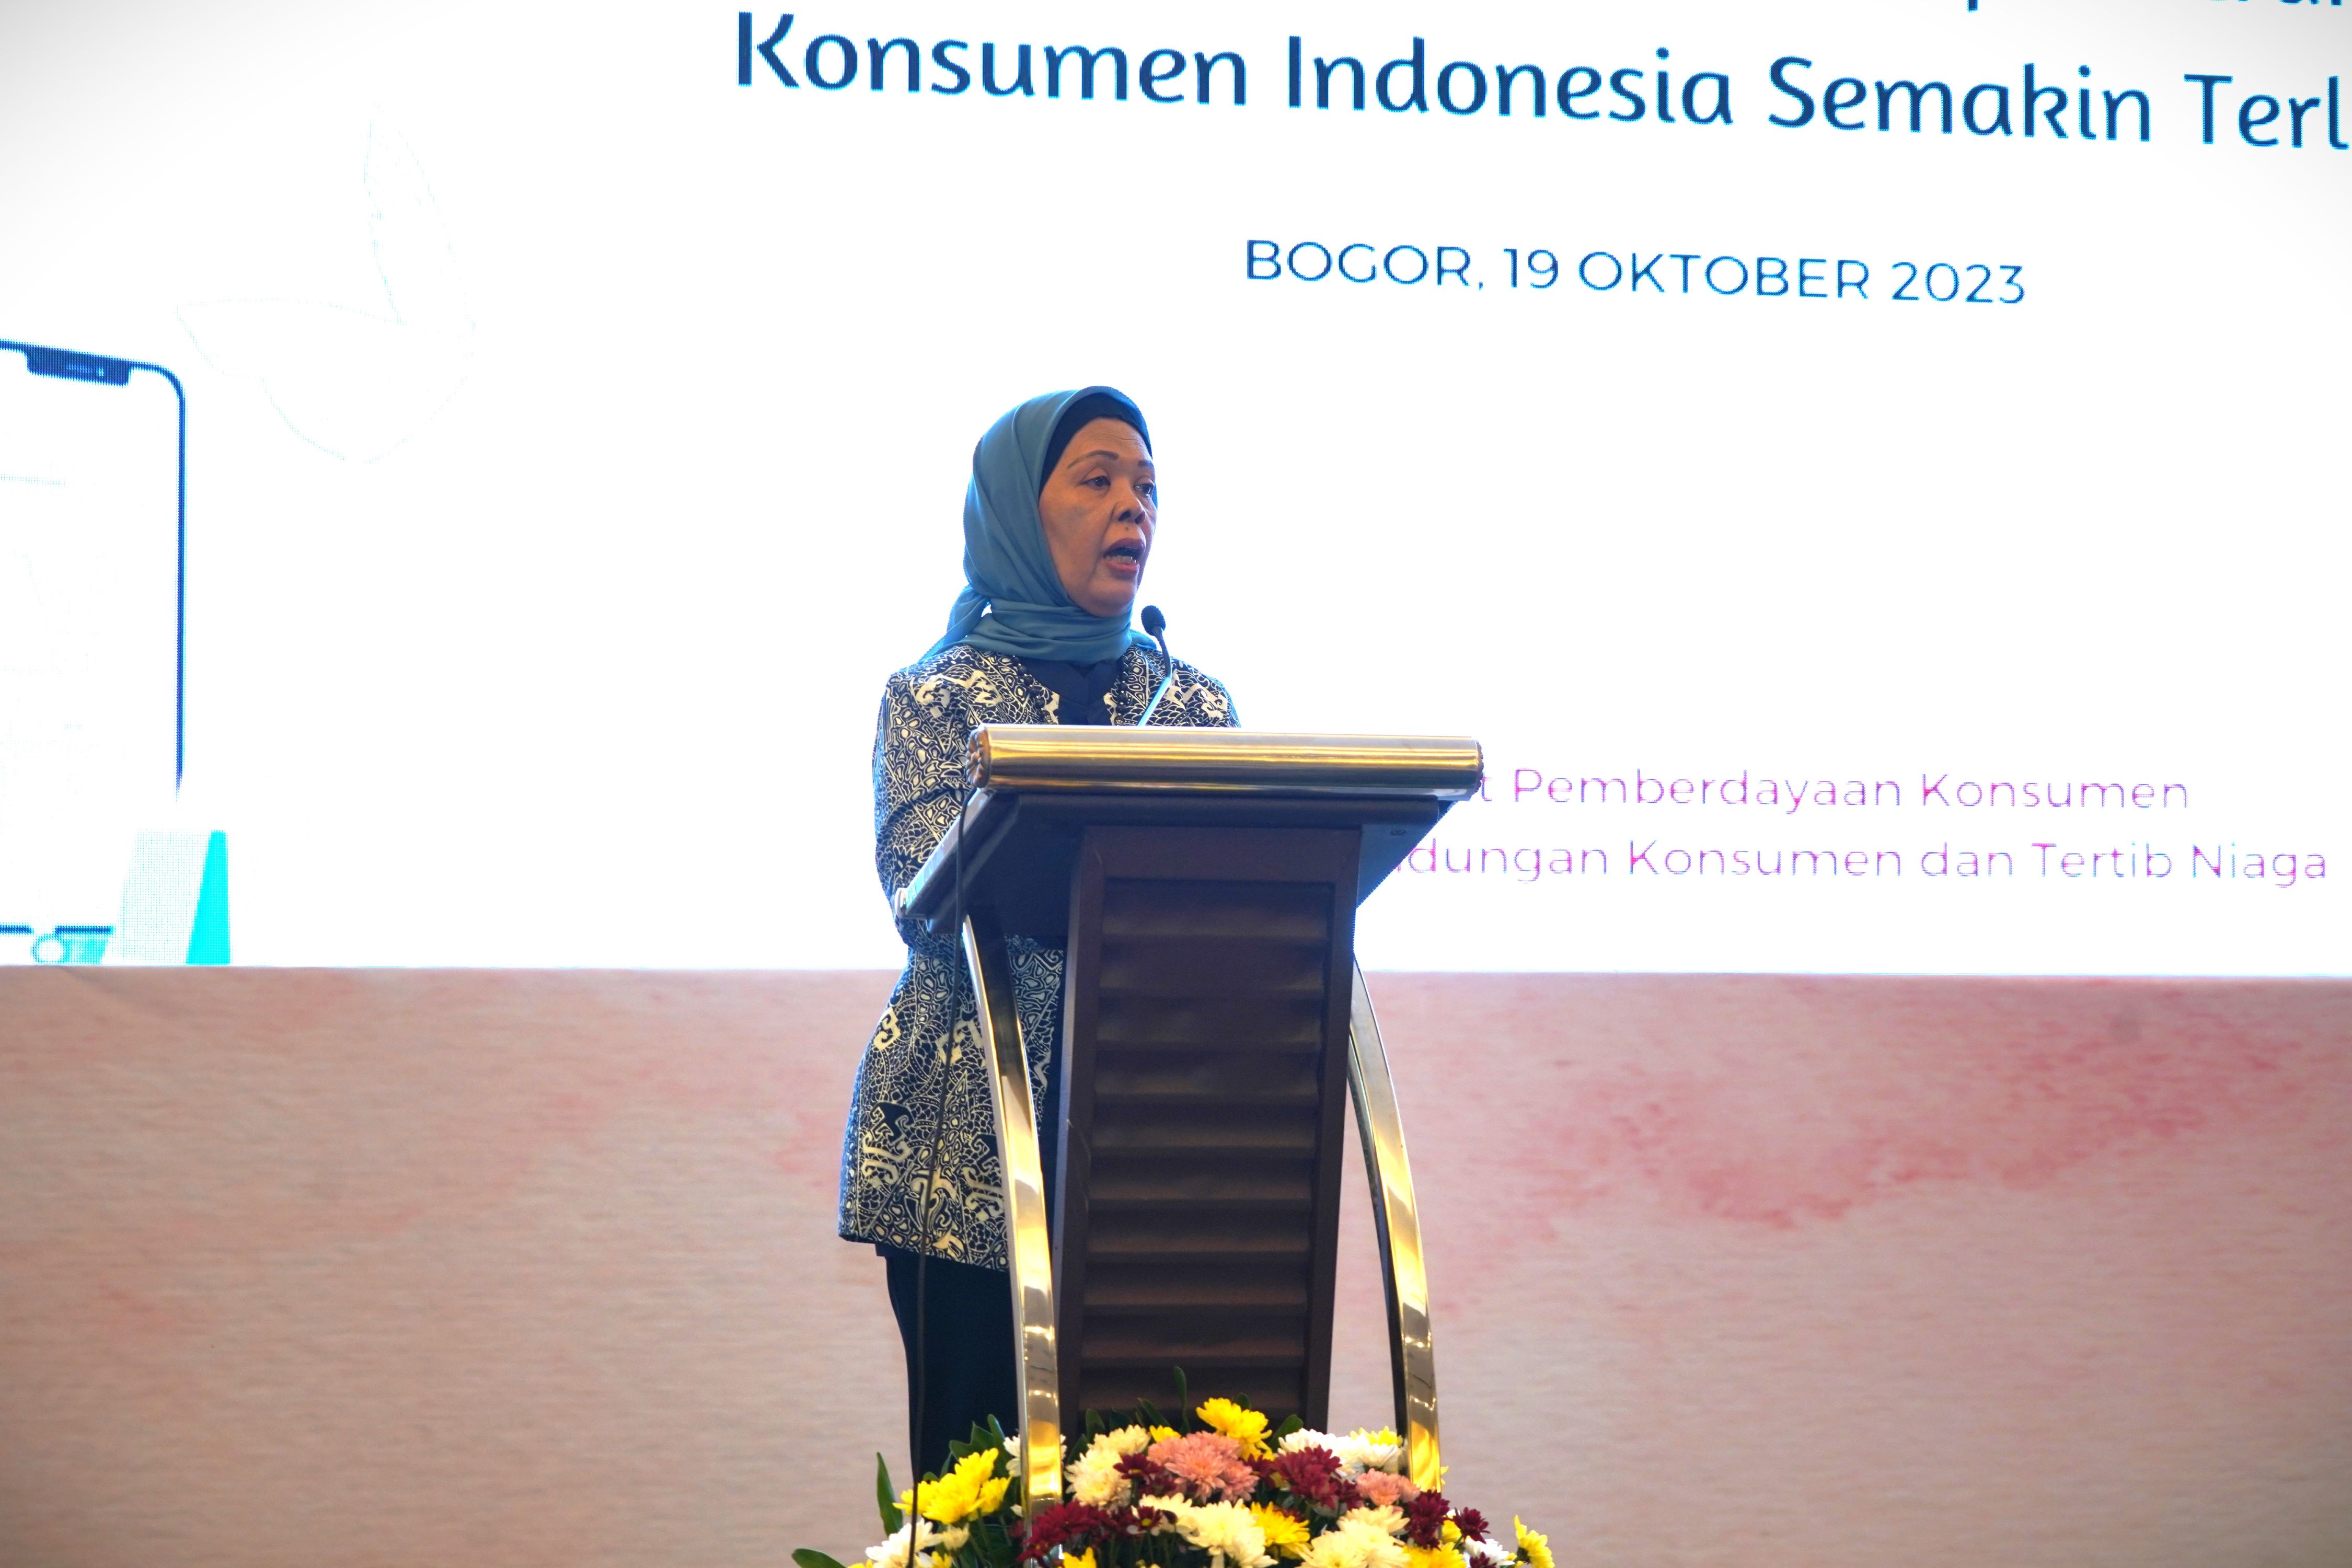 Dalam laporannya, Inspektur Jenderal Kementerian Perdagangan Frida Adiati menyampaikan bahwa tujuan kegiatan ini adalah meningkatkan pemahaman dan pengetahuan tentang perlindungan konsumen secara mendalam khususnya untuk perempuan Indonesia.